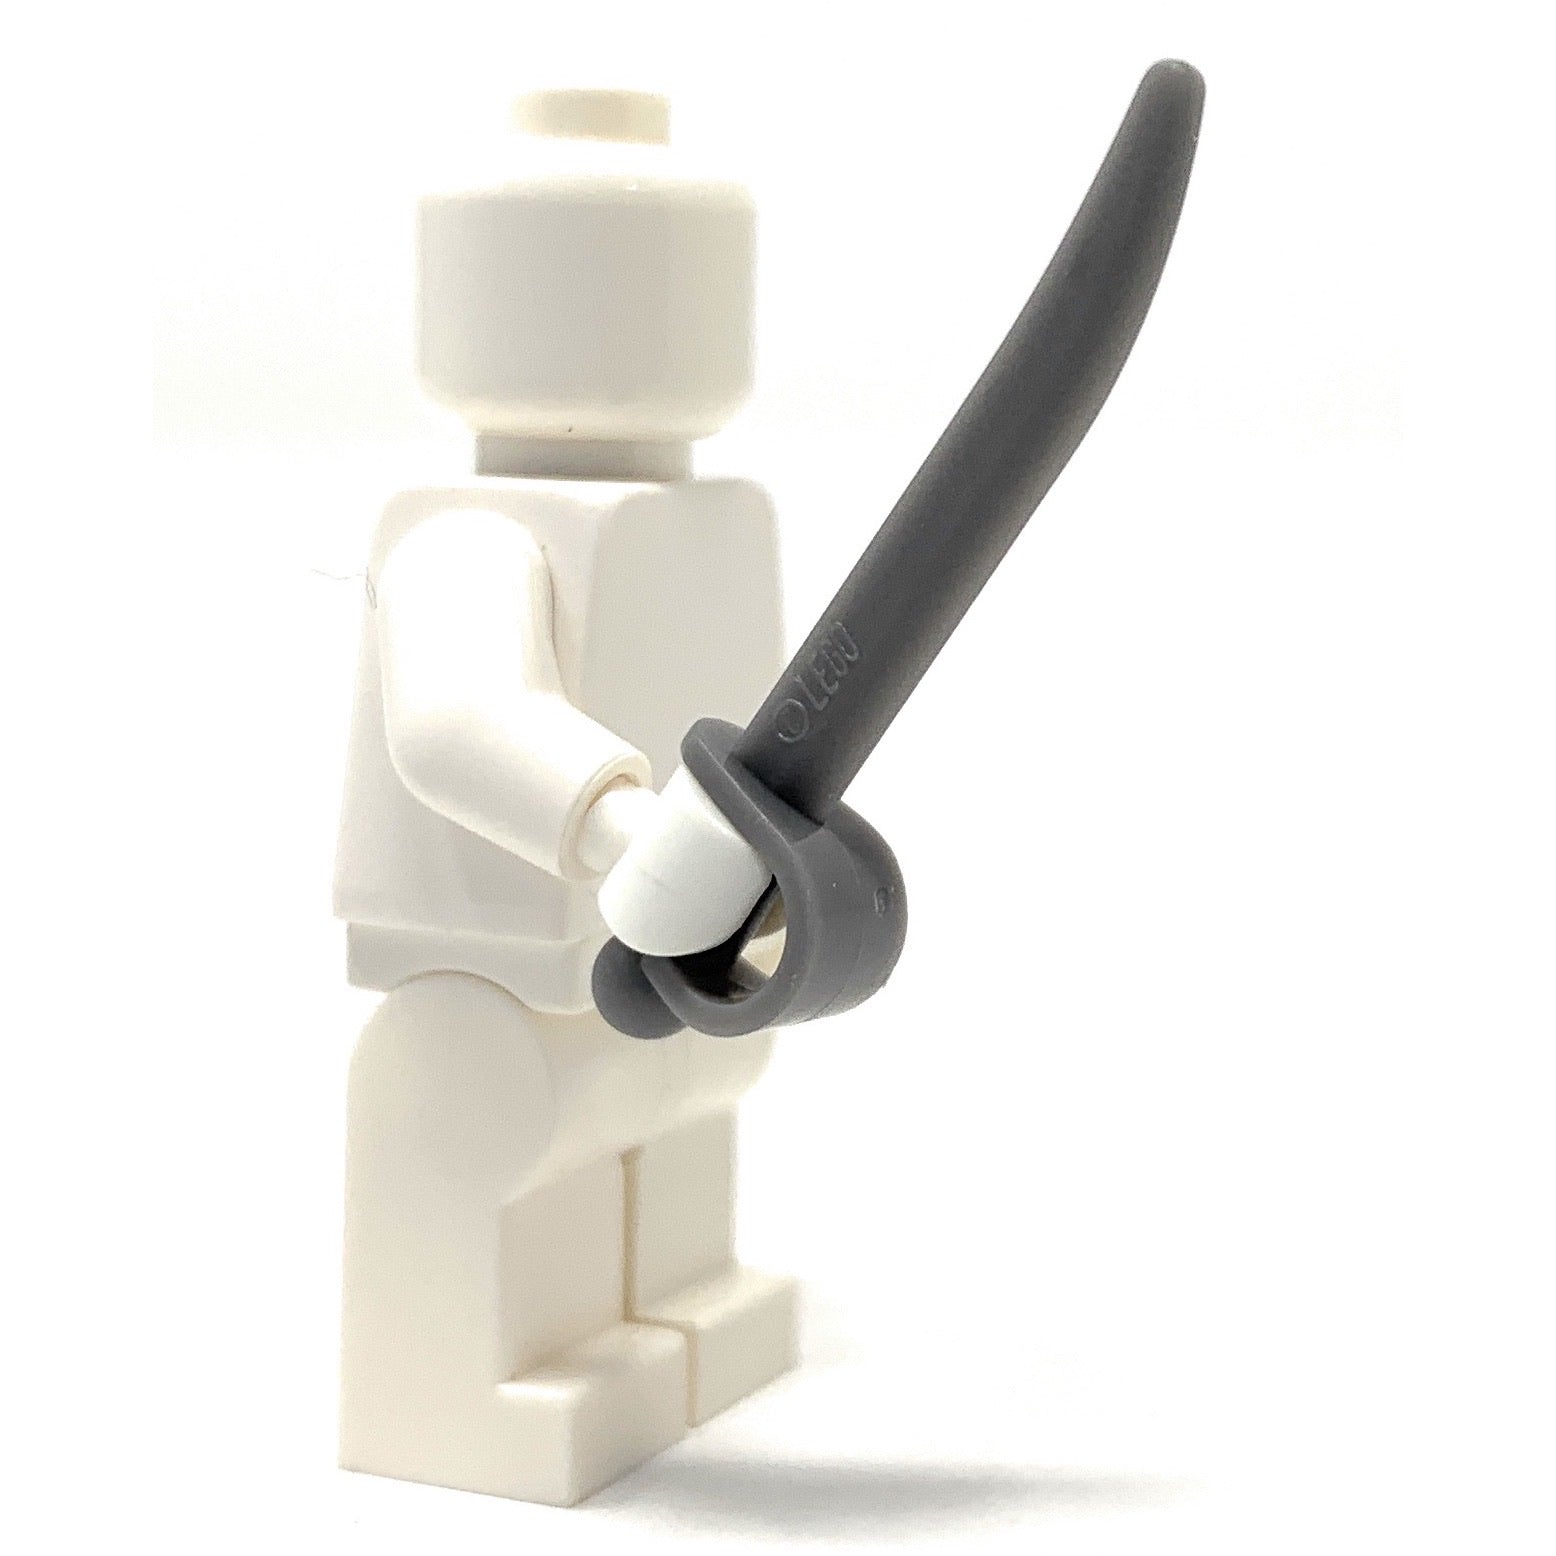 Cutlass, Sword - Official LEGO Minifigure Weapon Part